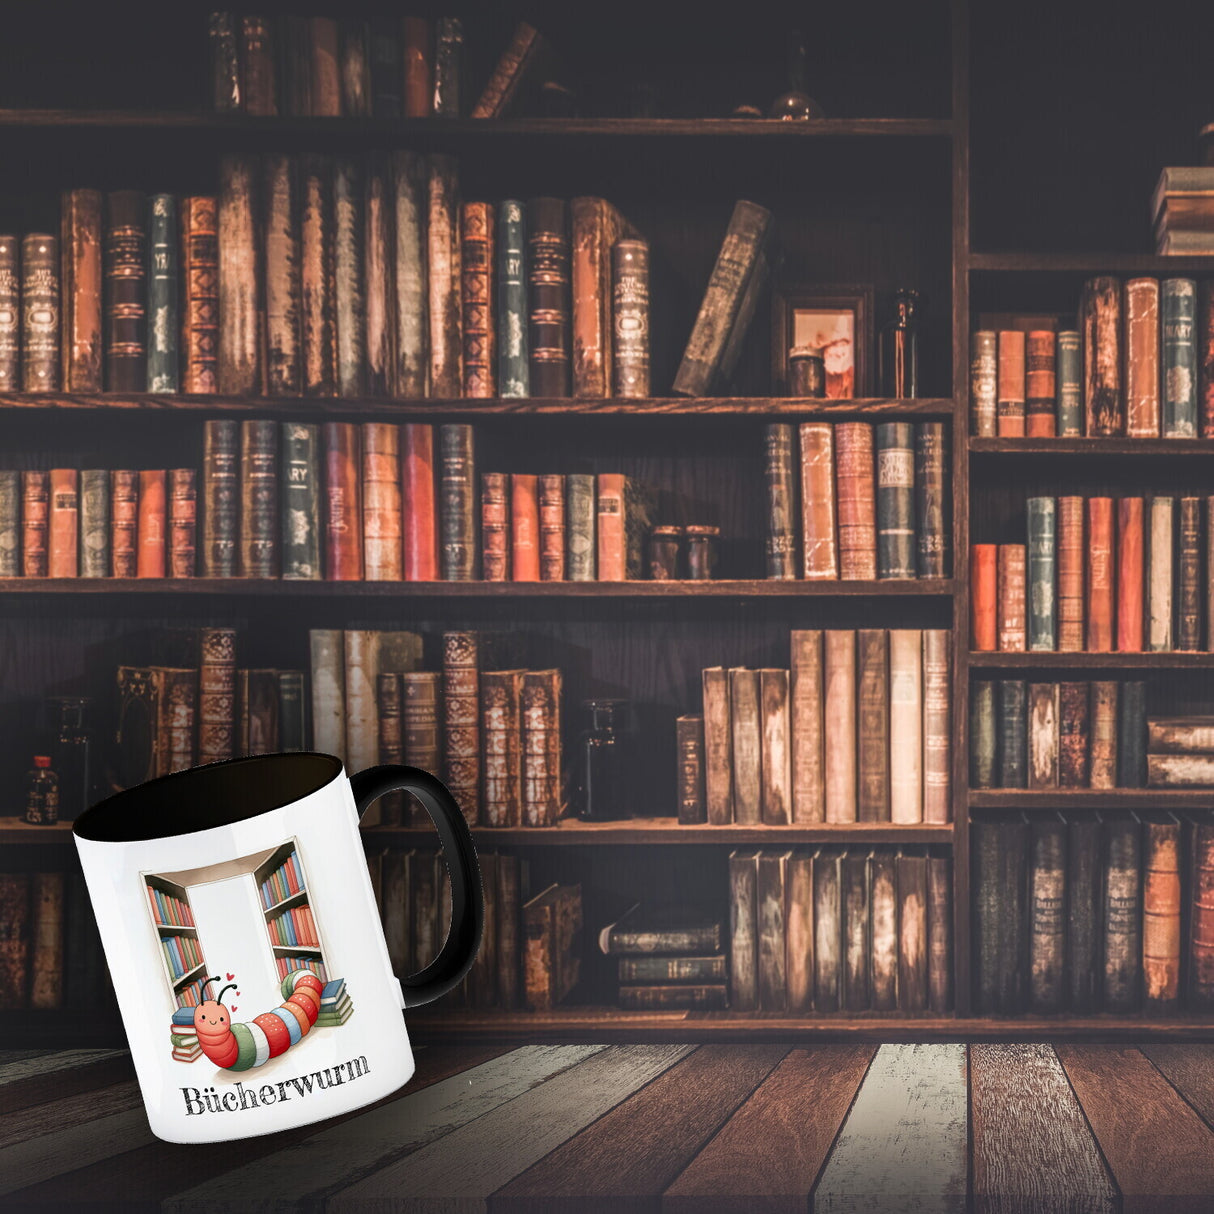 Bücherwurm Kaffeebecher mit Wurm in der Bibliothek